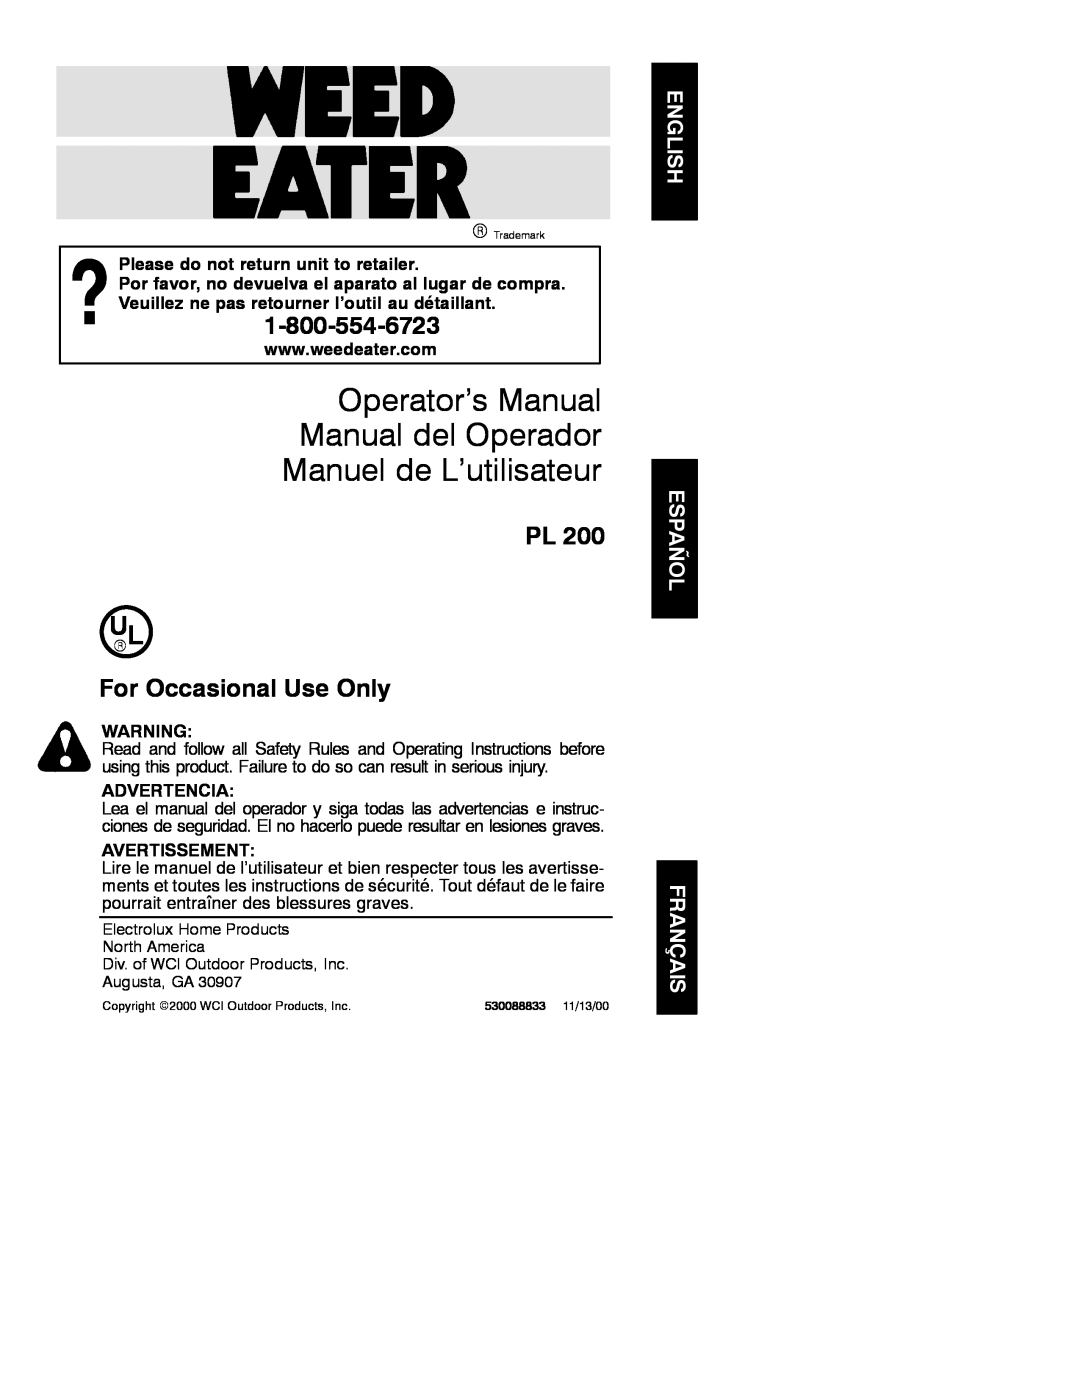 Weed Eater 530088833 operating instructions Operator’s Manual Manual del Operador Manuel de L’utilisateur, Advertencia 